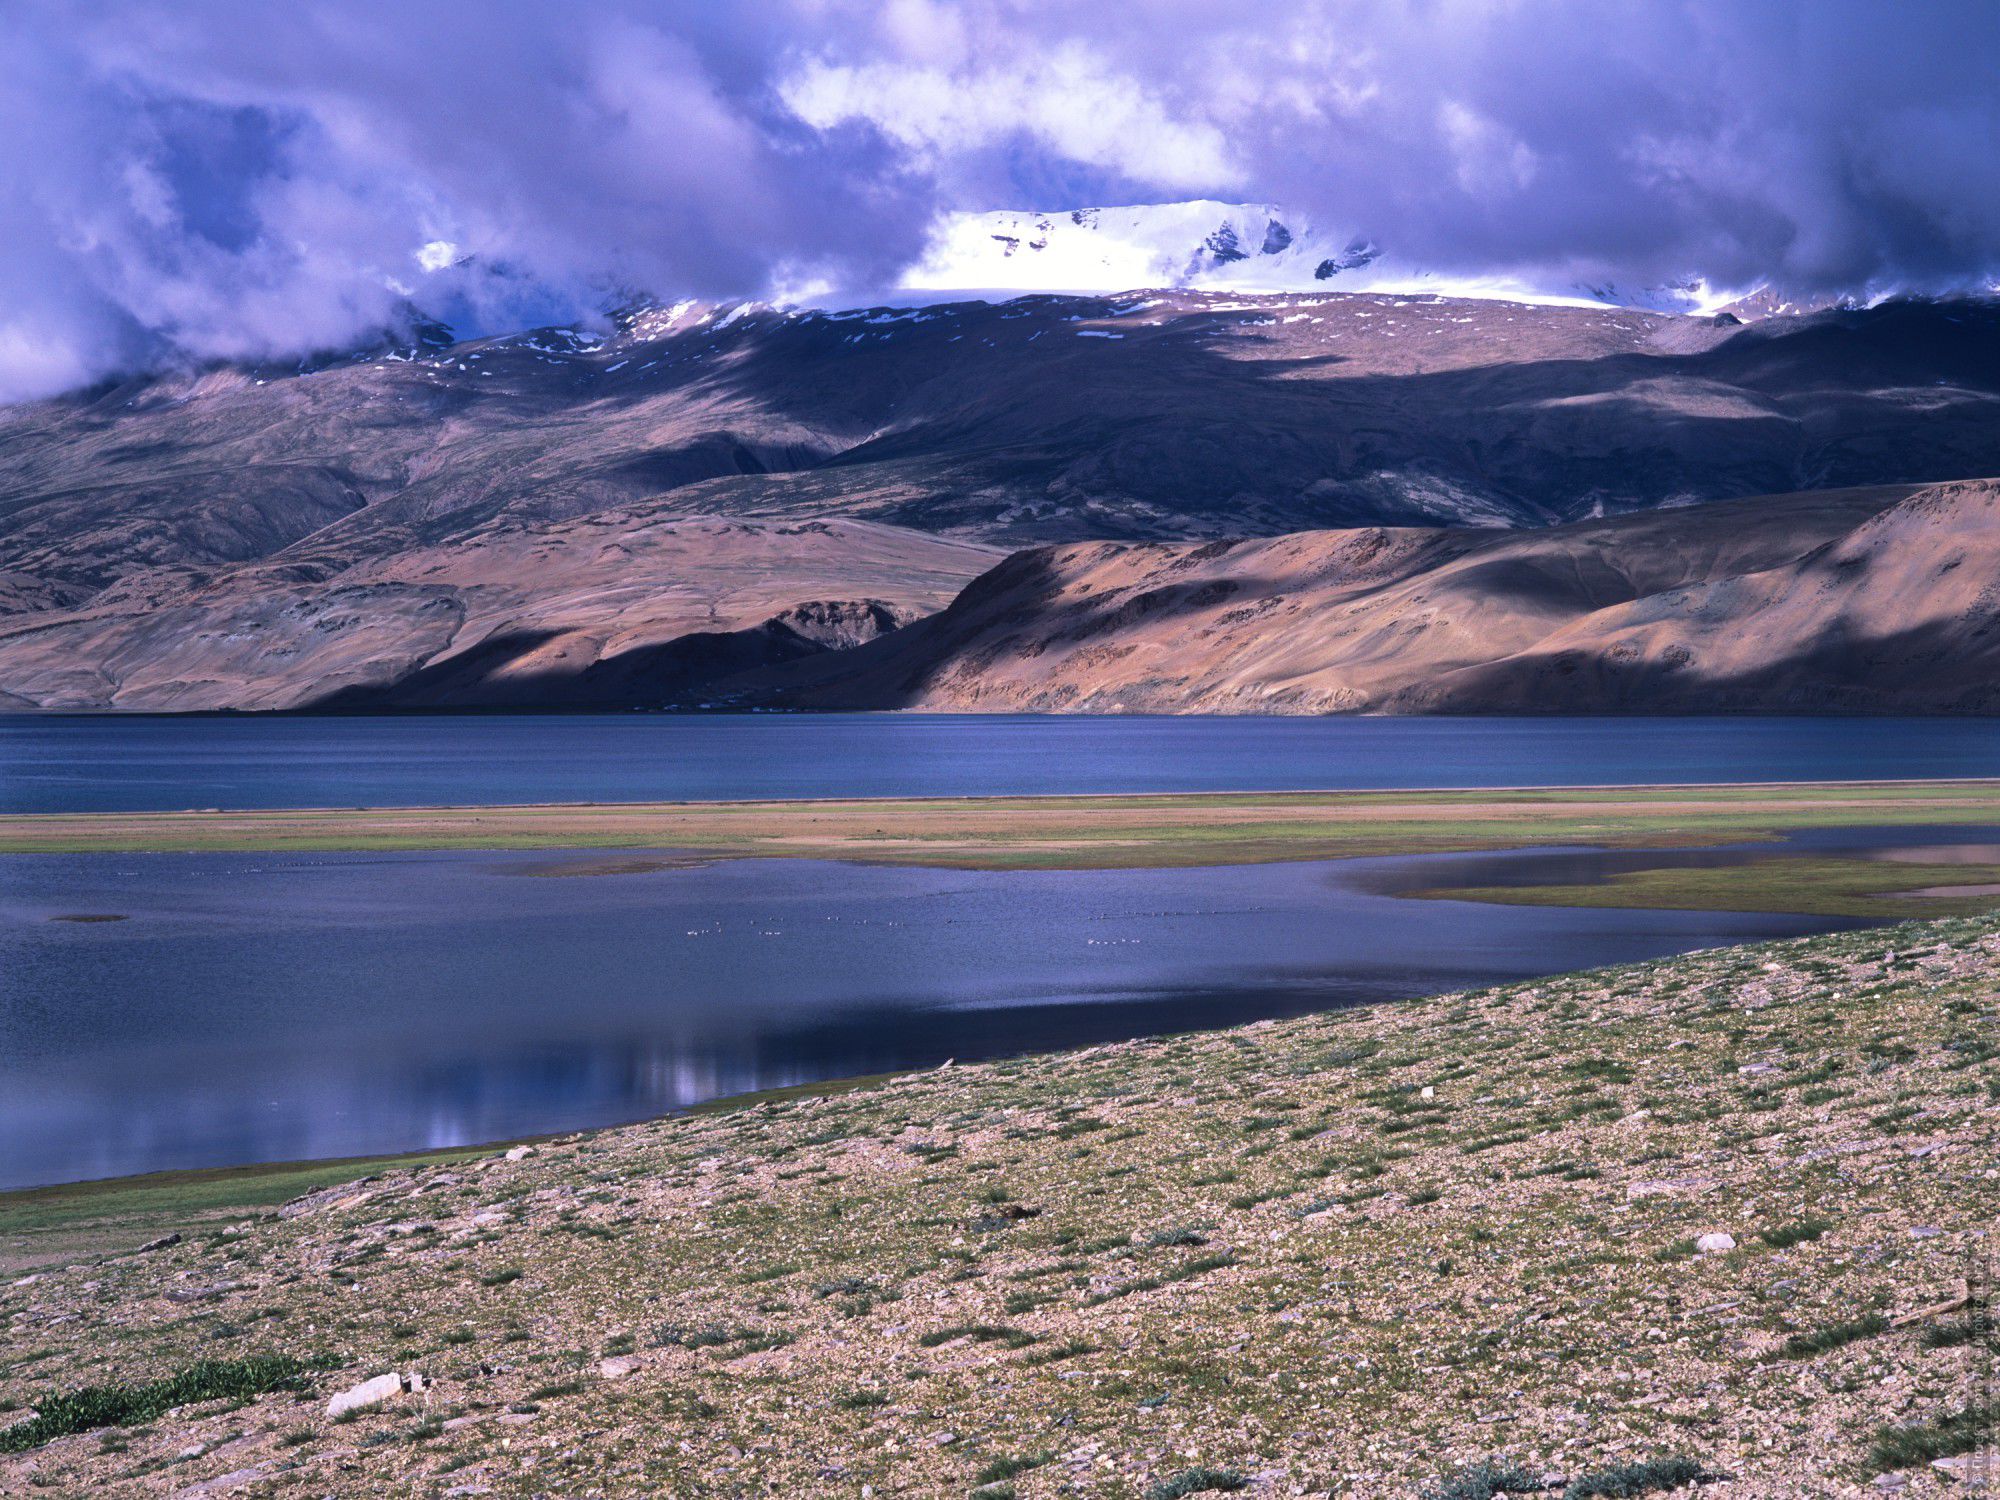 Фотография Фиолетовый Цо Морири, пленка. Бюджетный фототур по высокогорным озерам Тибета, Ладакх.